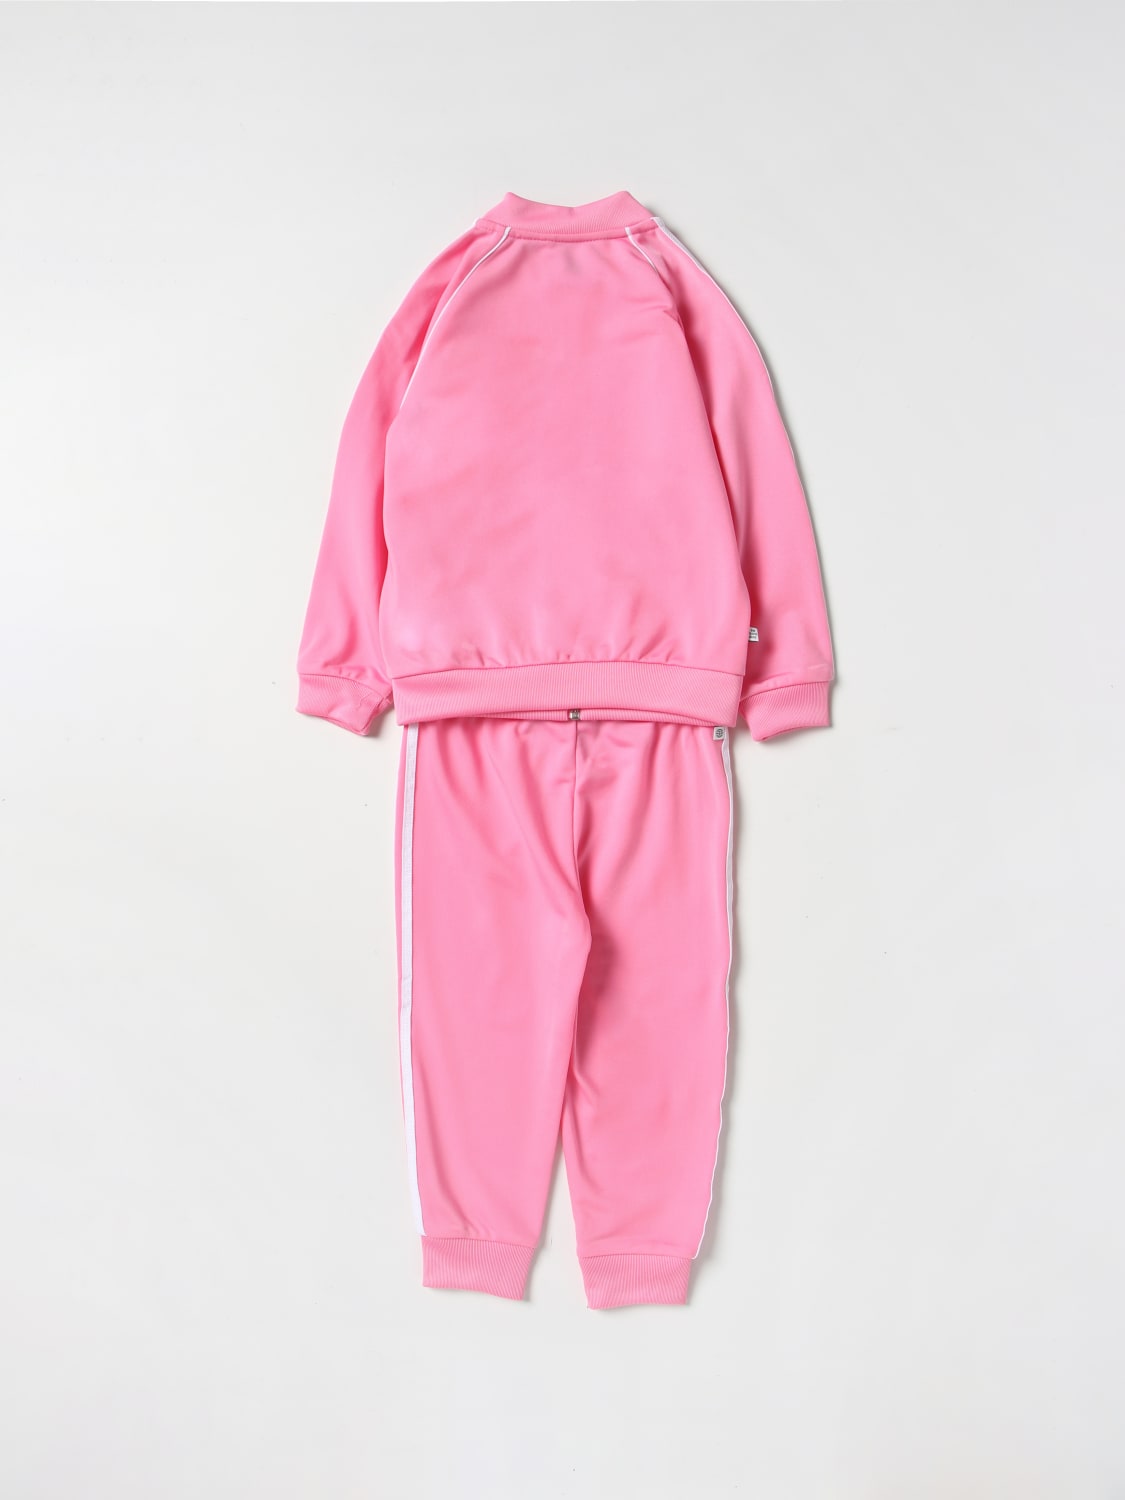 Empirisch Versterker Zijdelings ADIDAS ORIGINALS: jumpsuit for baby - Pink | Adidas Originals jumpsuit  HK7485 online on GIGLIO.COM